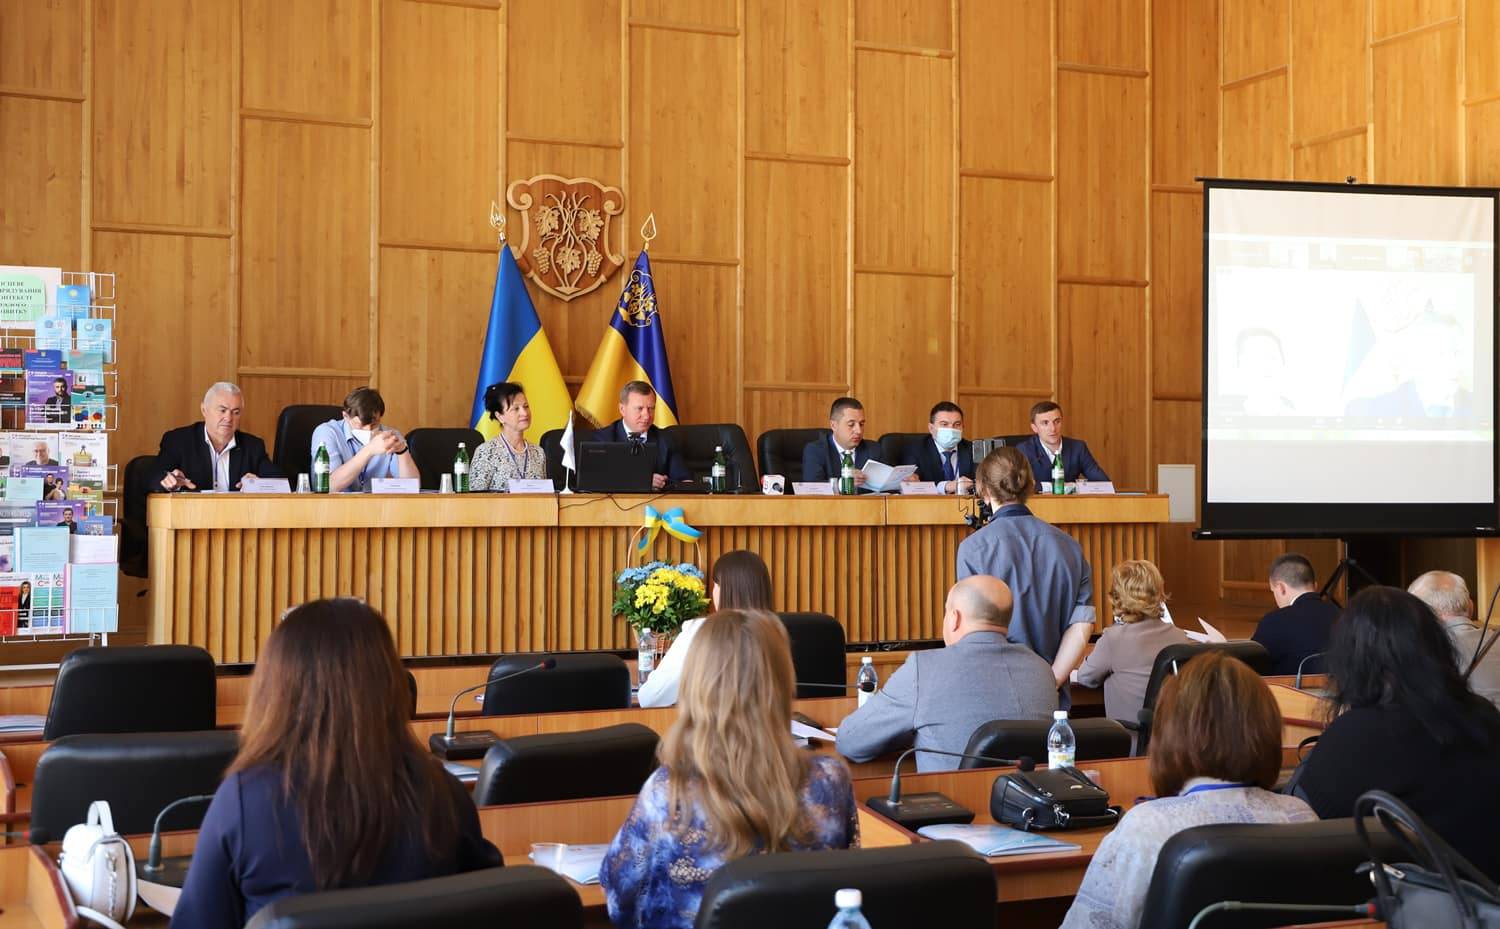 Розвиток місцевого самоврядування обговорили на міжнародній конференції, організованій Східно-європейським слов’янським університетом